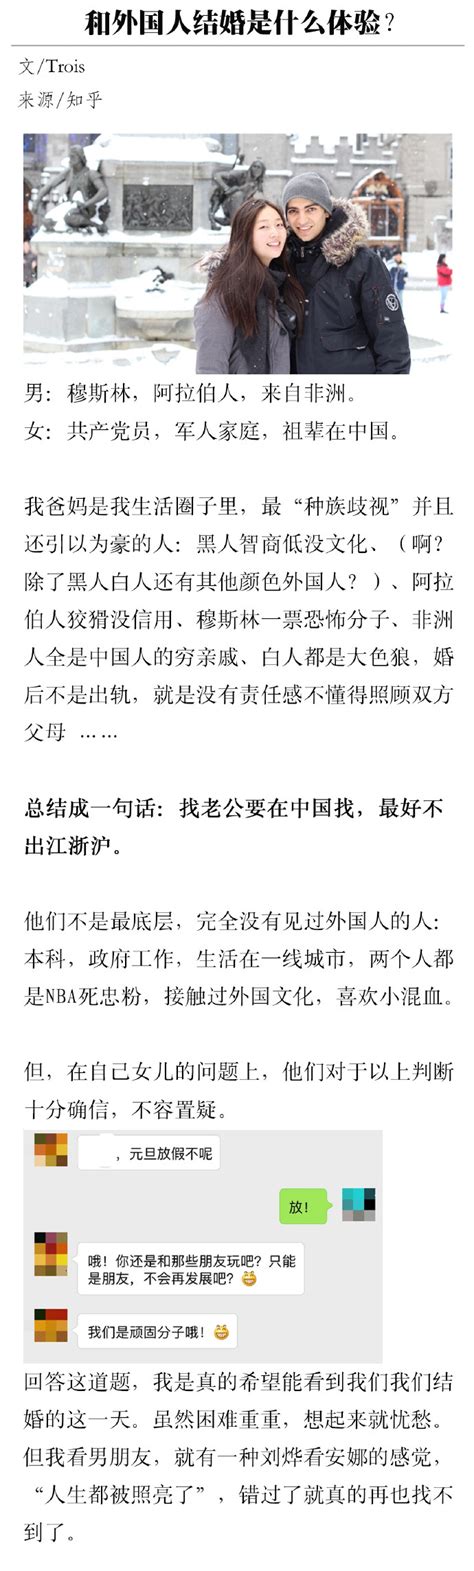 【VIETSUB + PINYIN】《跟外国人结婚，是一种什么体验》第3集 上海！真的是上海！ - 听故事学中文Audio-book | Luyện Nghe Tiếng Trung - 每日中文课